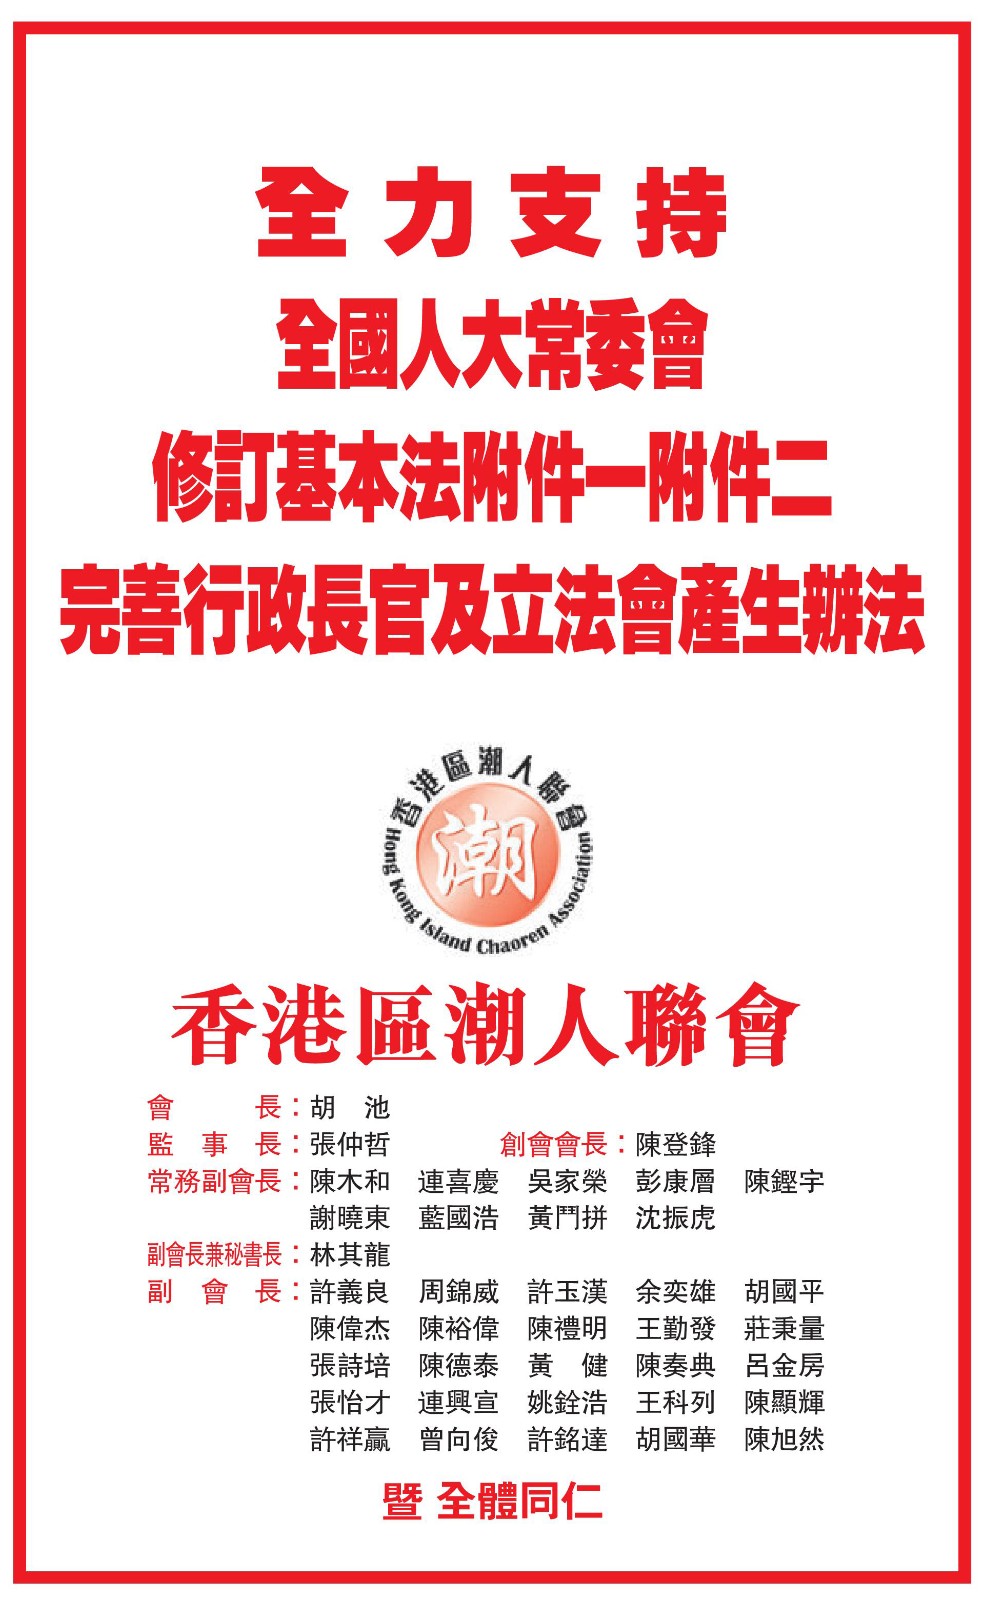 香港區潮人聯會在文匯報刊登聲明堅決擁護全國人大常委會修訂基本法附件一及二，完善香港選舉制度及設5個街站宣傳-0